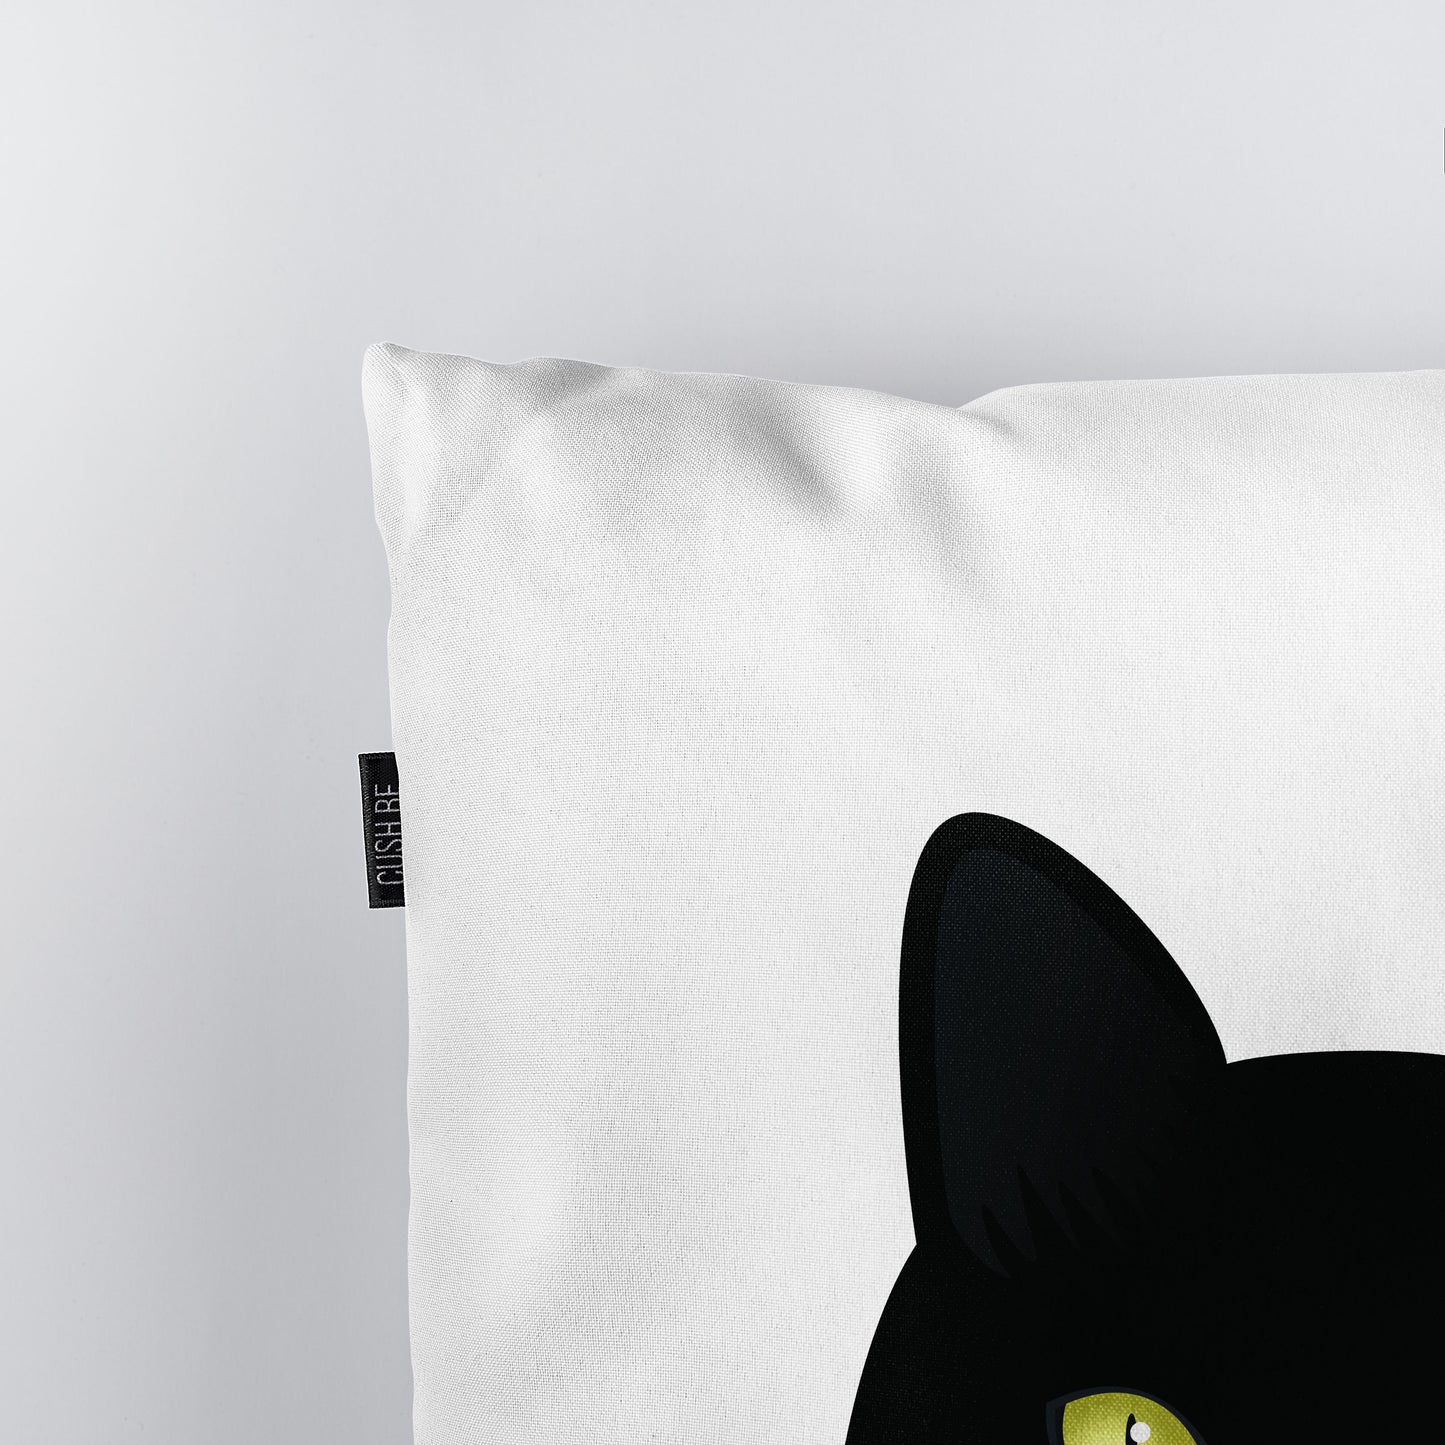 Възглавница Черна котка със светнали очи